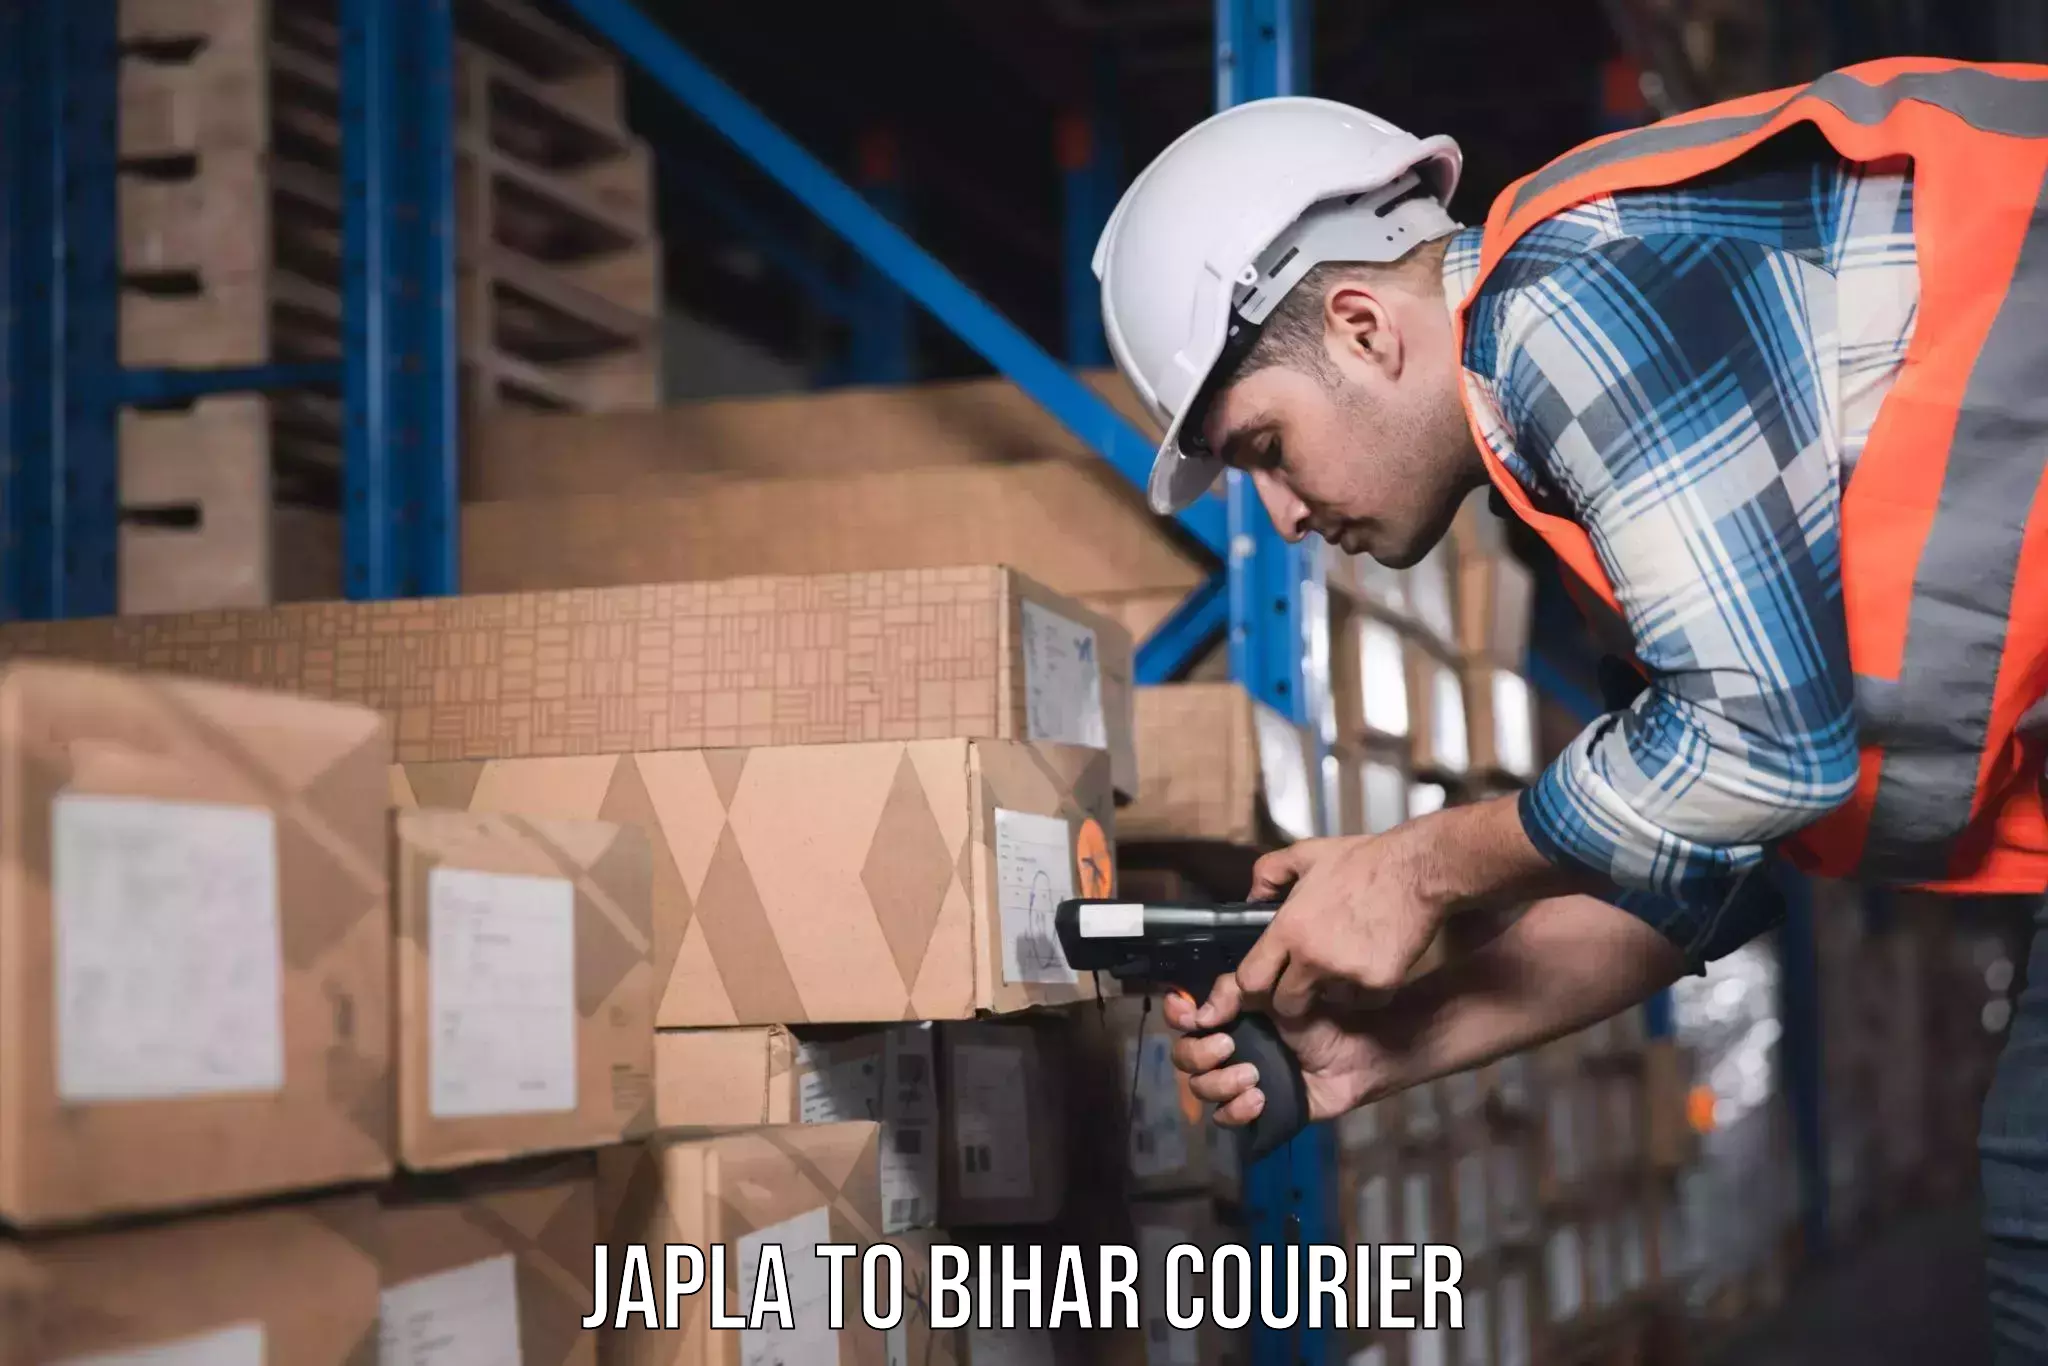 Furniture delivery service Japla to Sandesh